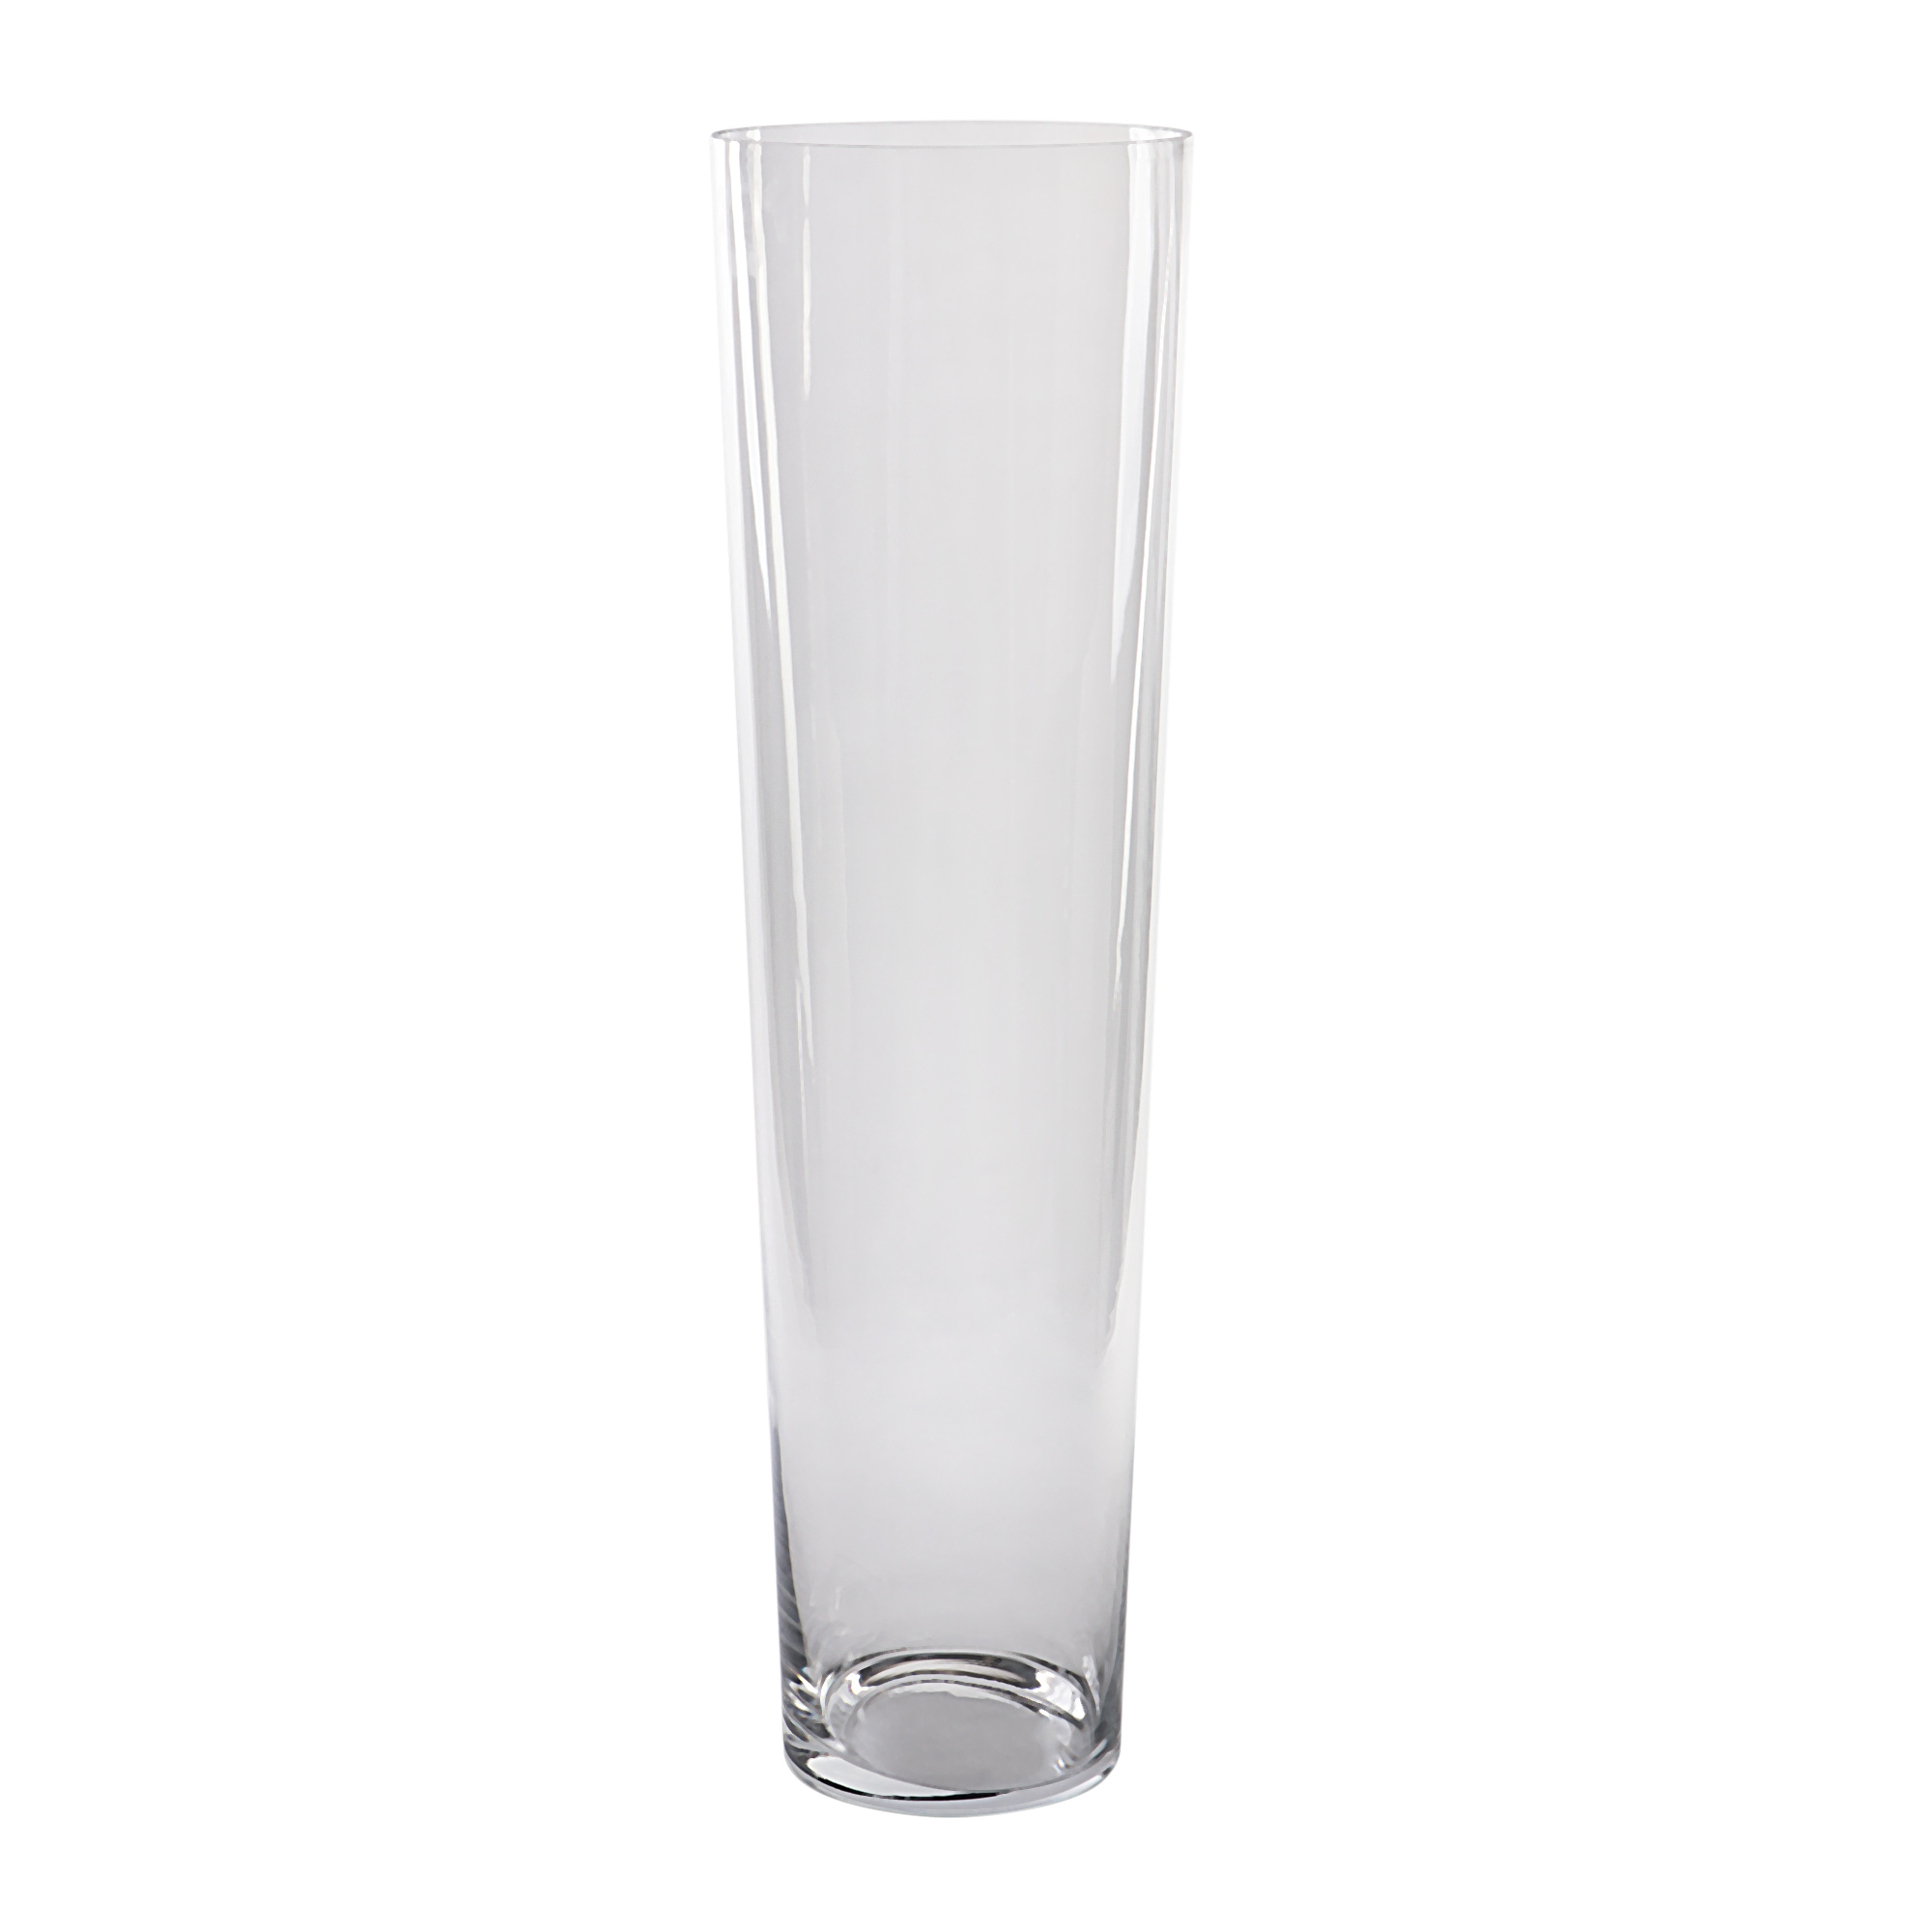 Ваза Hakbijl glass conical д19.5см 70см